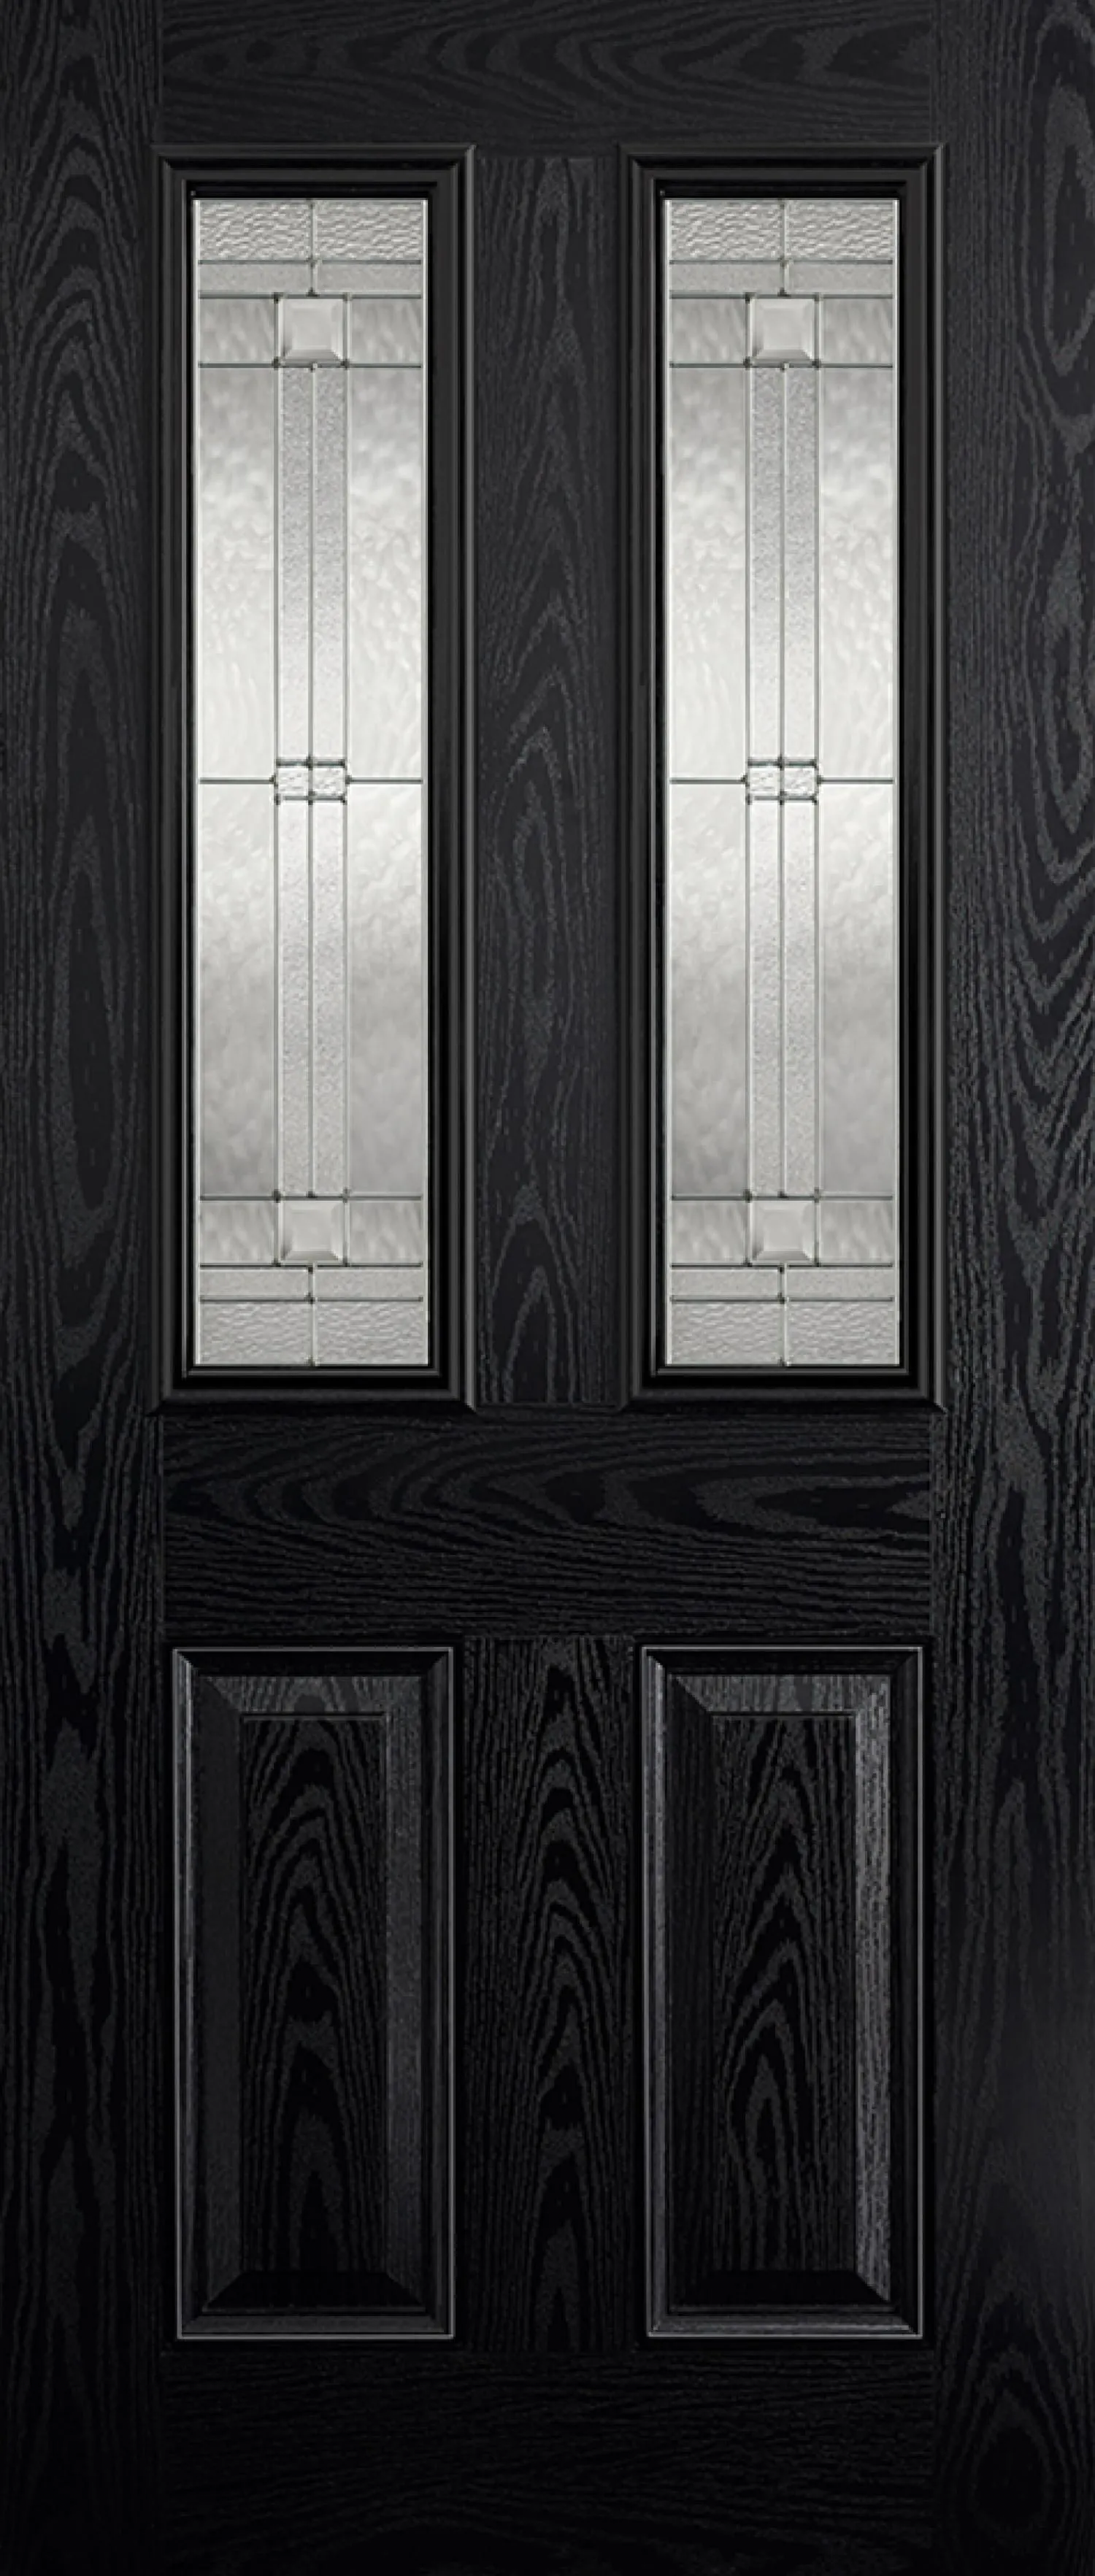 Malton GRP External Door - Leaded DG 2032 x 813mm Black out/White in   GRPMALBLA32